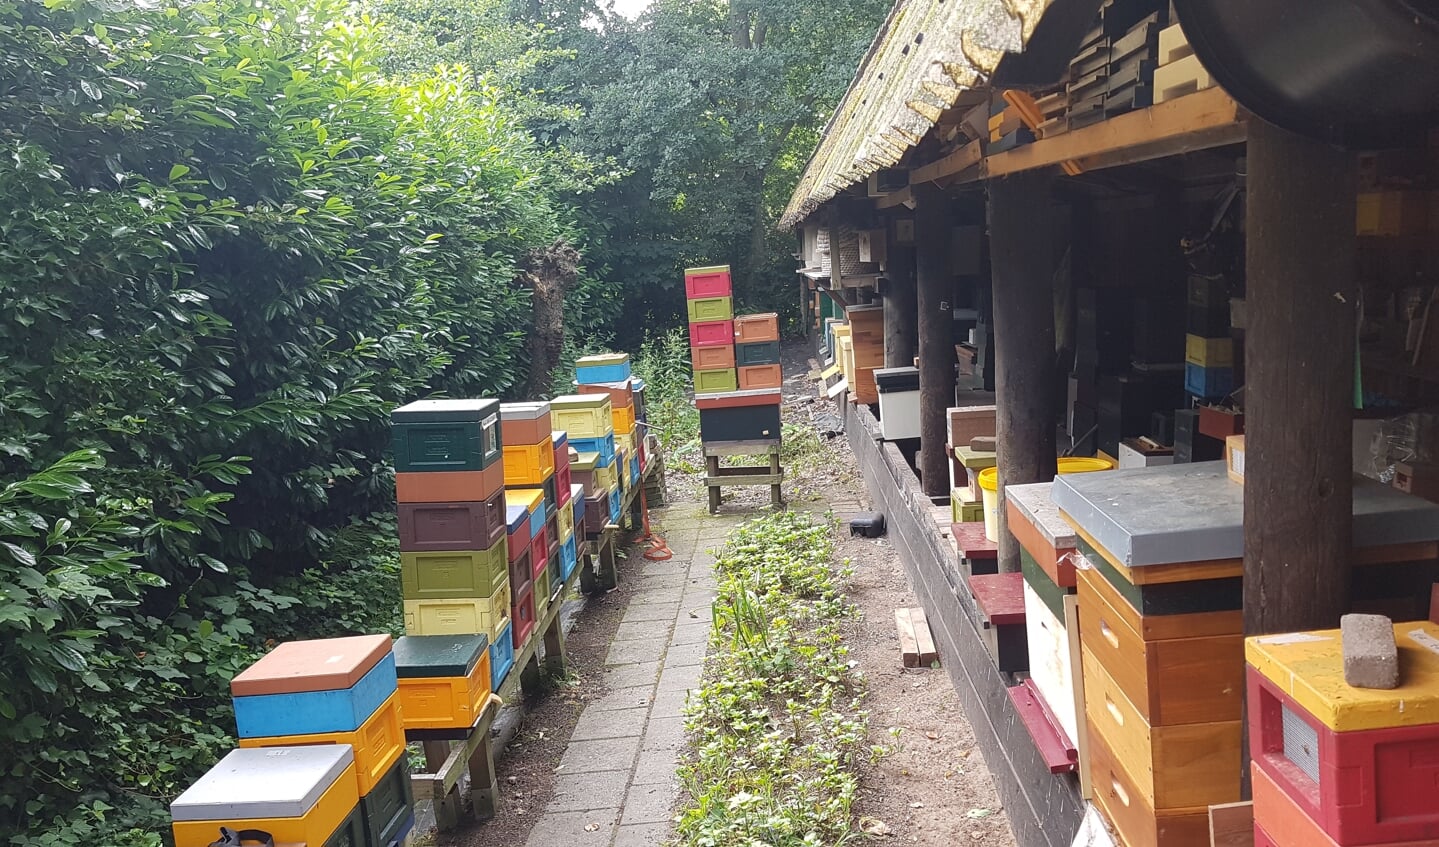 De Nederlandse Bijenhouders Vereniging afdeling Nijkerk vertelt tijdens de open dag graag alles over imkeren en het belang van de bij.